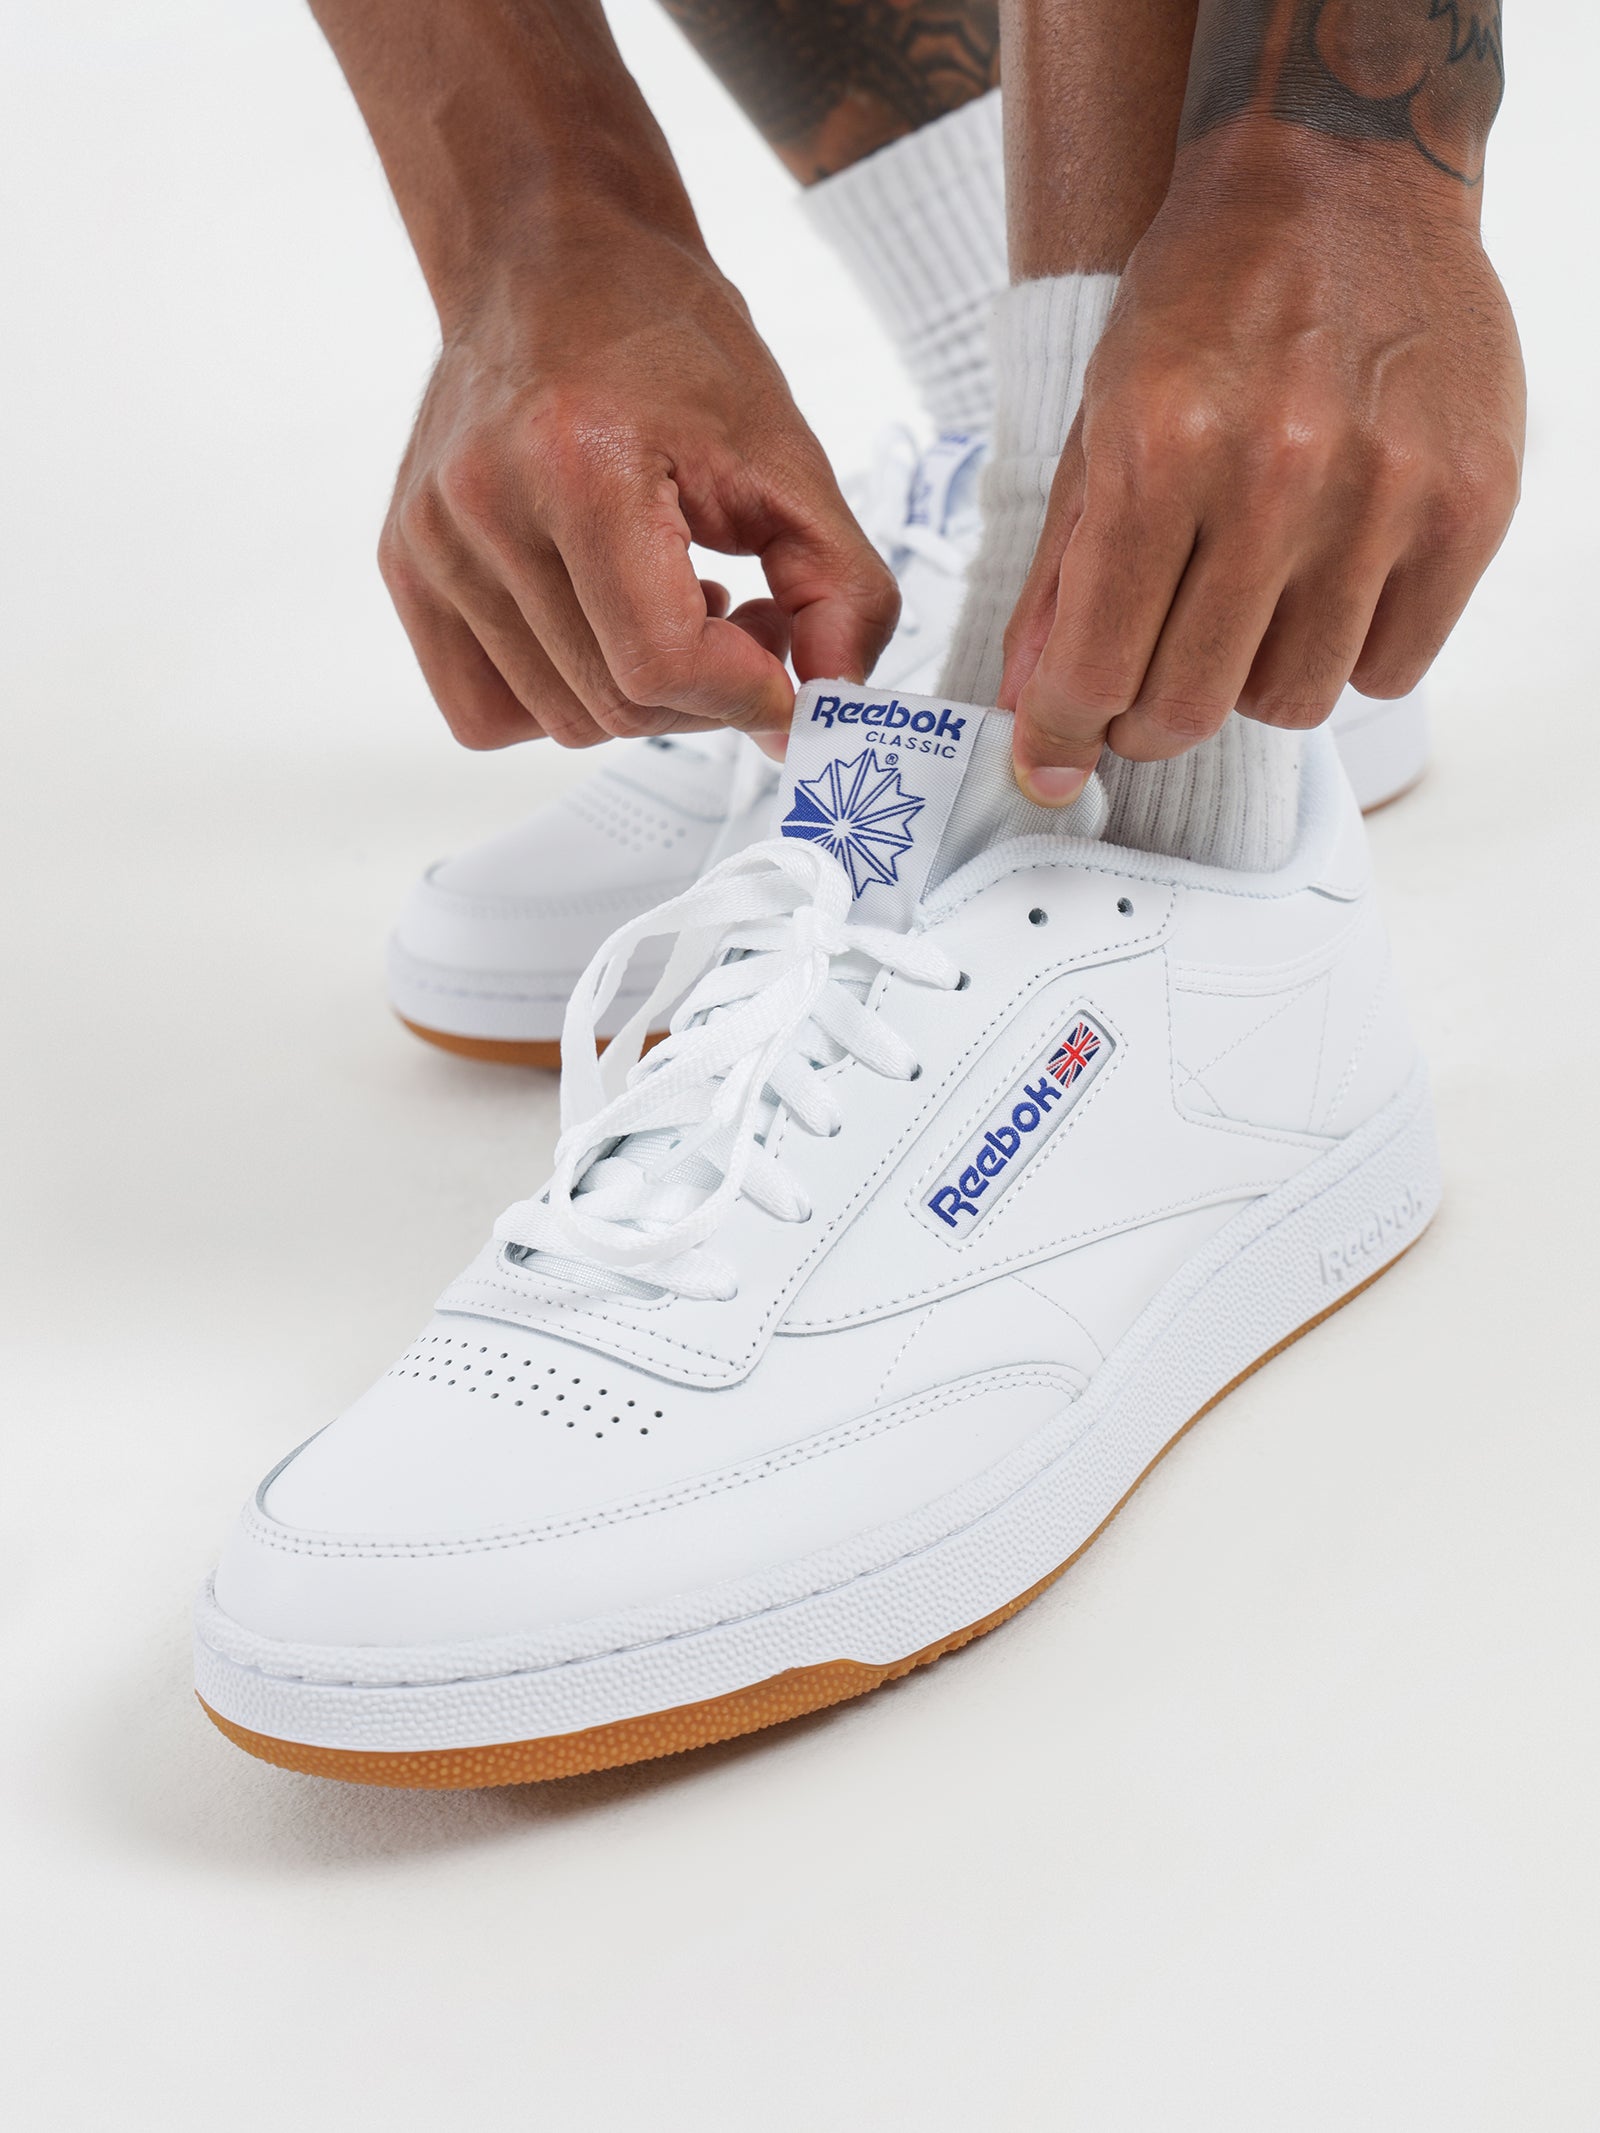 Unisex Club C 85 Sneakers in White u0026 Blue - Glue Store